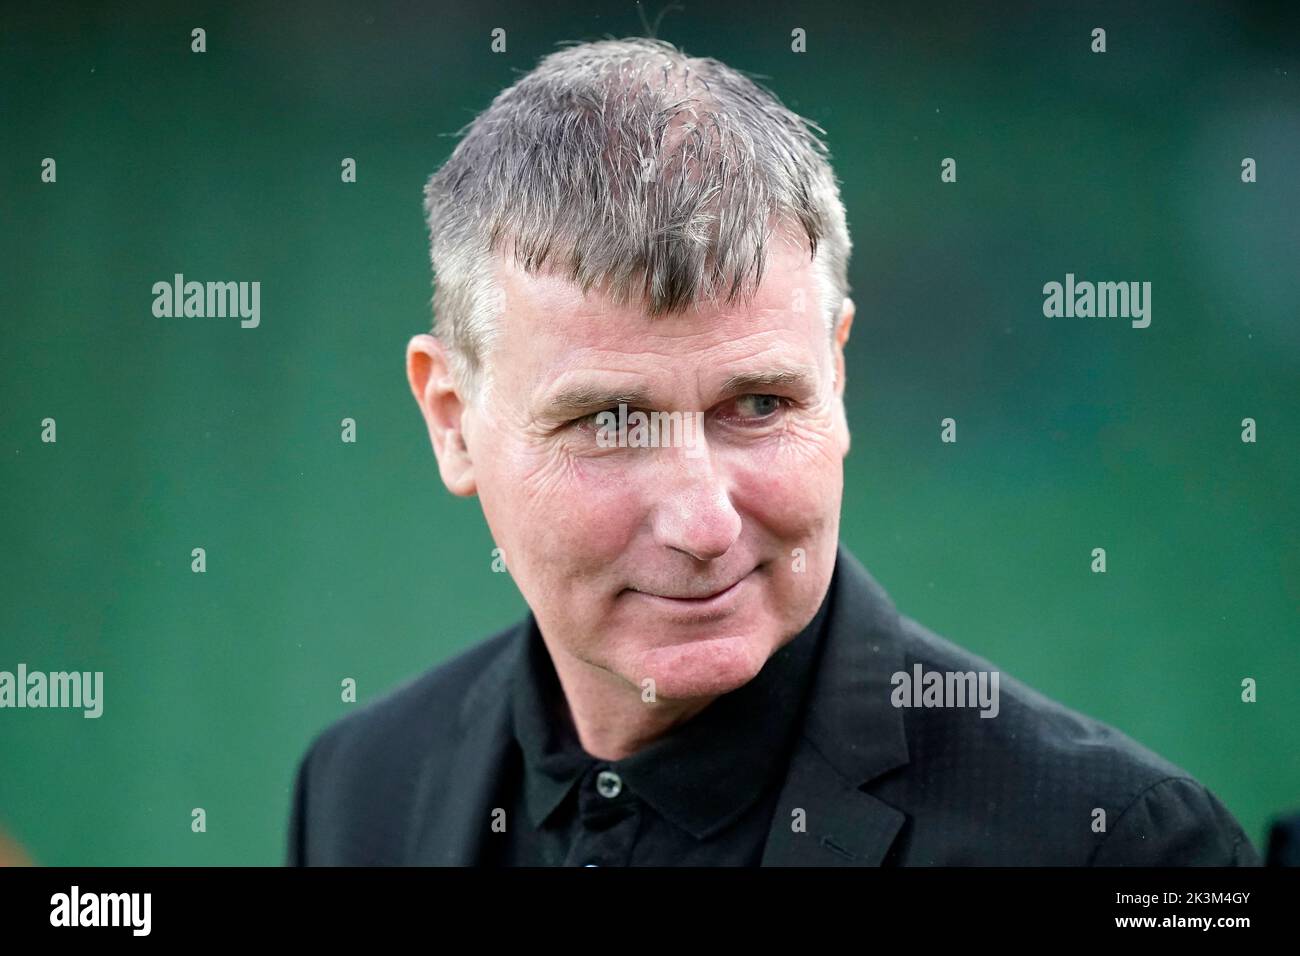 Stephen Kenny, entraîneur en chef de la République d'Irlande, avant le match de l'UEFA Nations League au stade Aviva de Dublin, en Irlande. Date de la photo: Mardi 27 septembre 2022. Banque D'Images